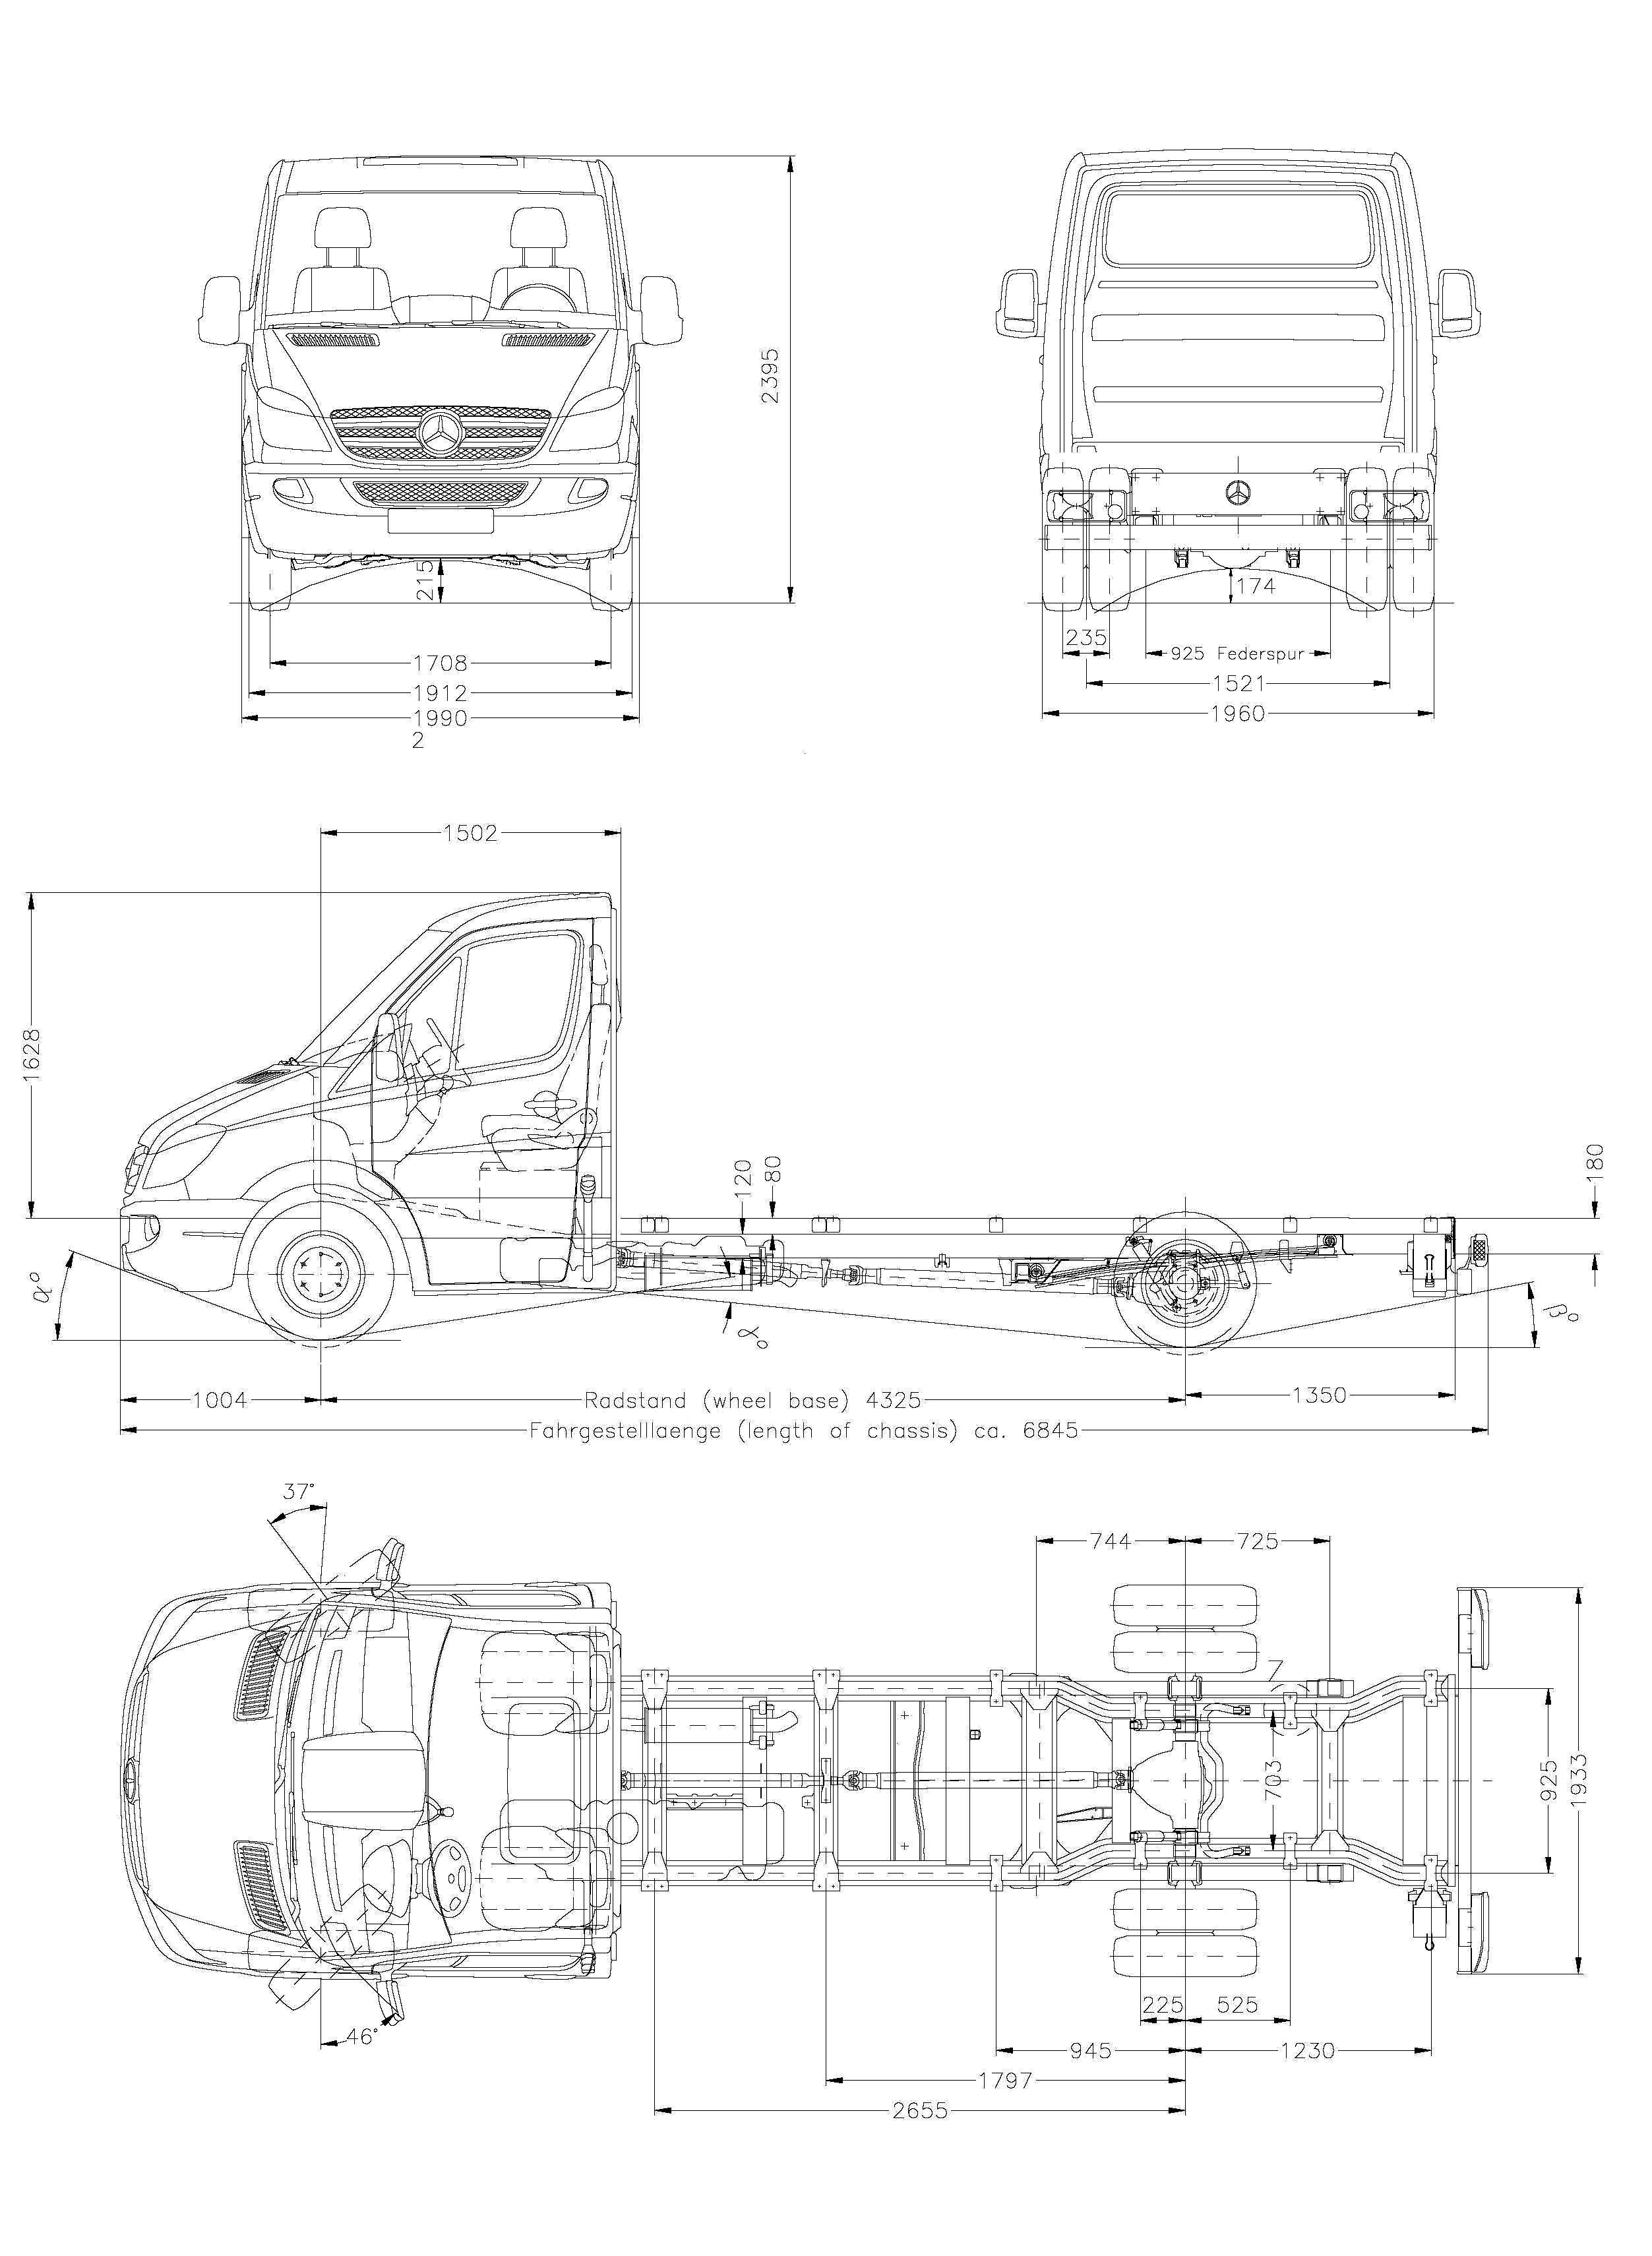 Mercedes-Benz Sprinter blueprint